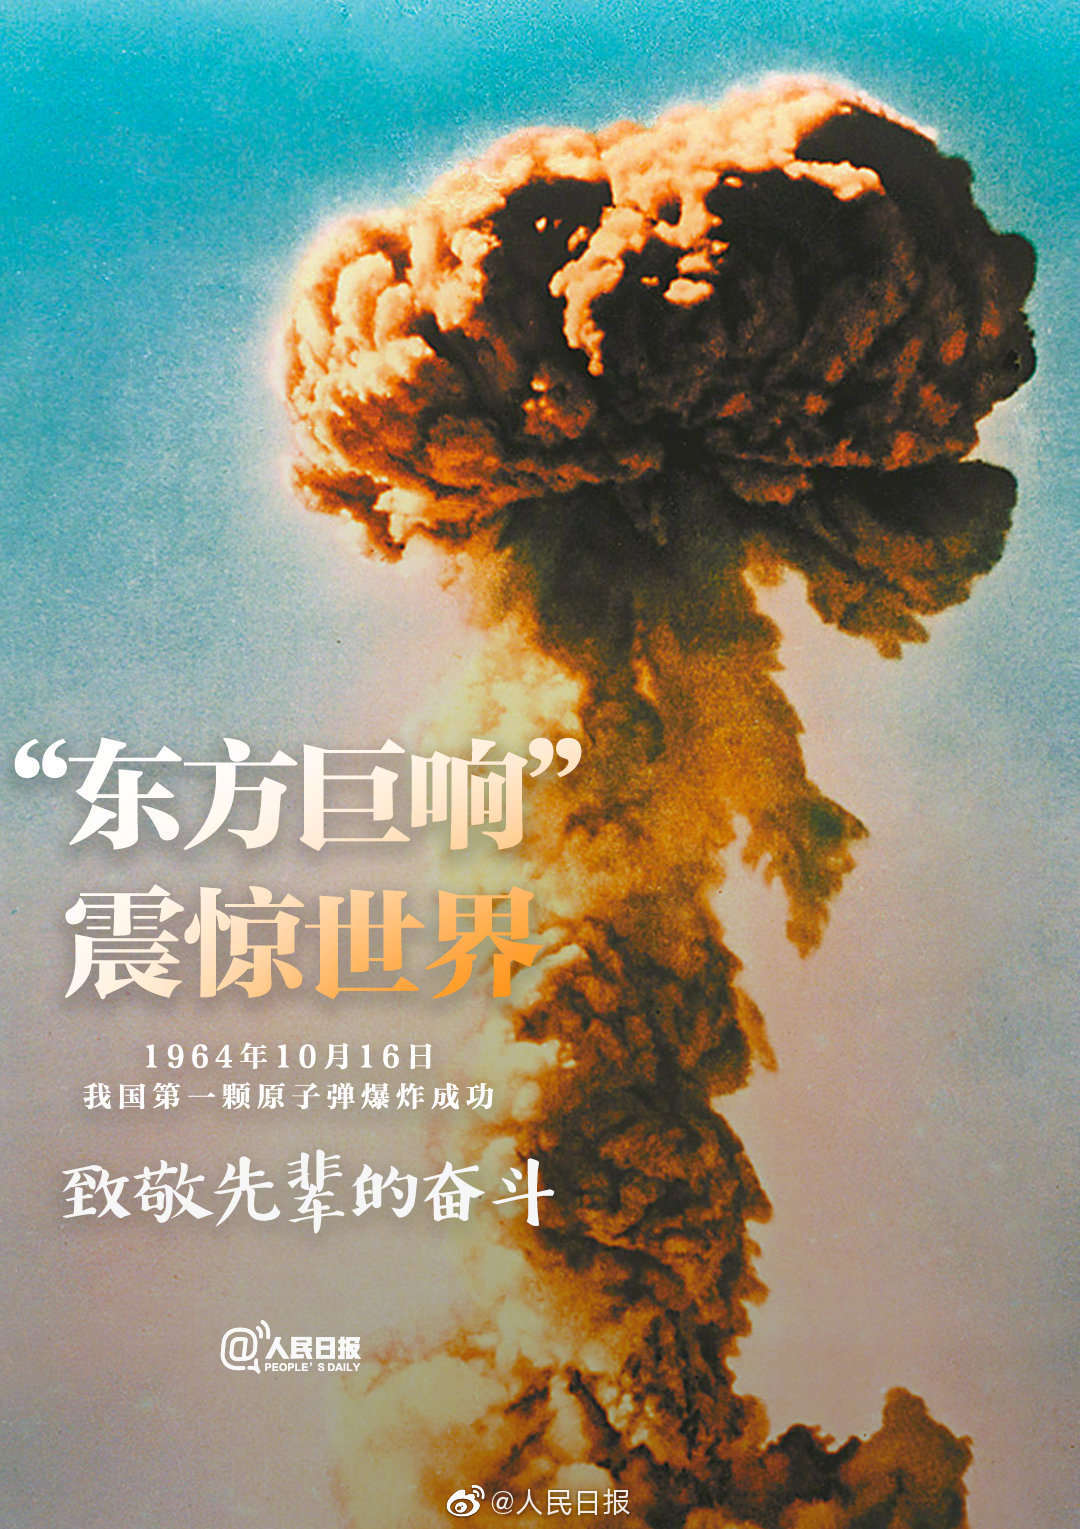 1964年的今天,中国第一颗原子弹爆炸成功,打破了超级大国的核垄断和核